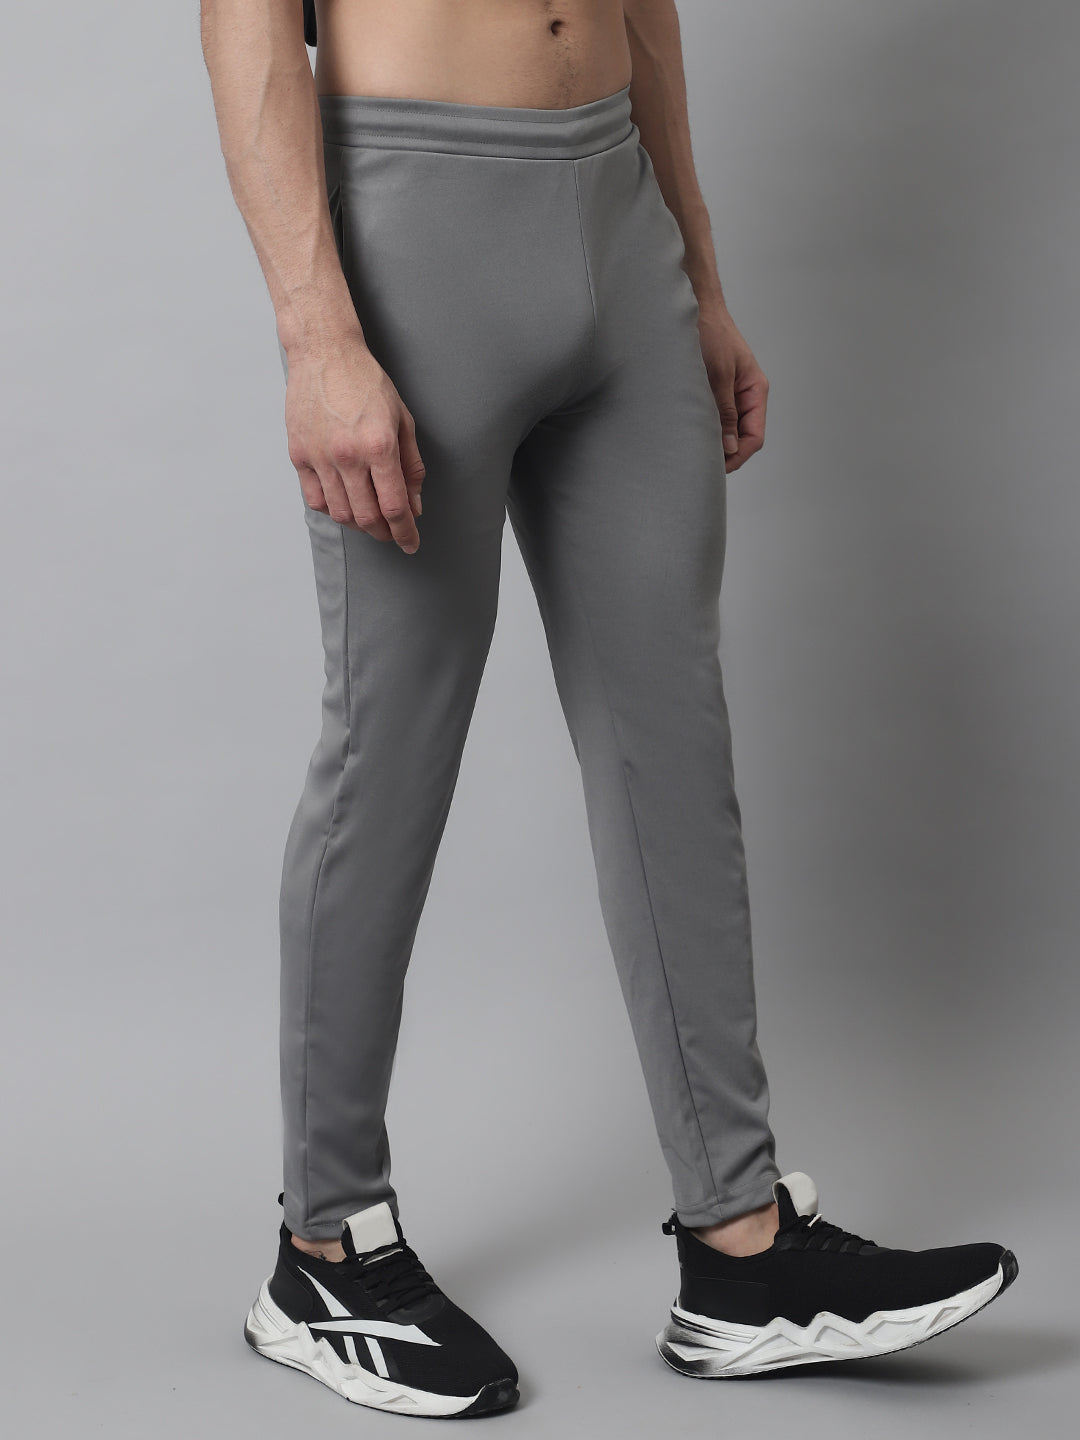 Jainish Men's Grey Solid Streachable Lycra Trackpants - Distacart